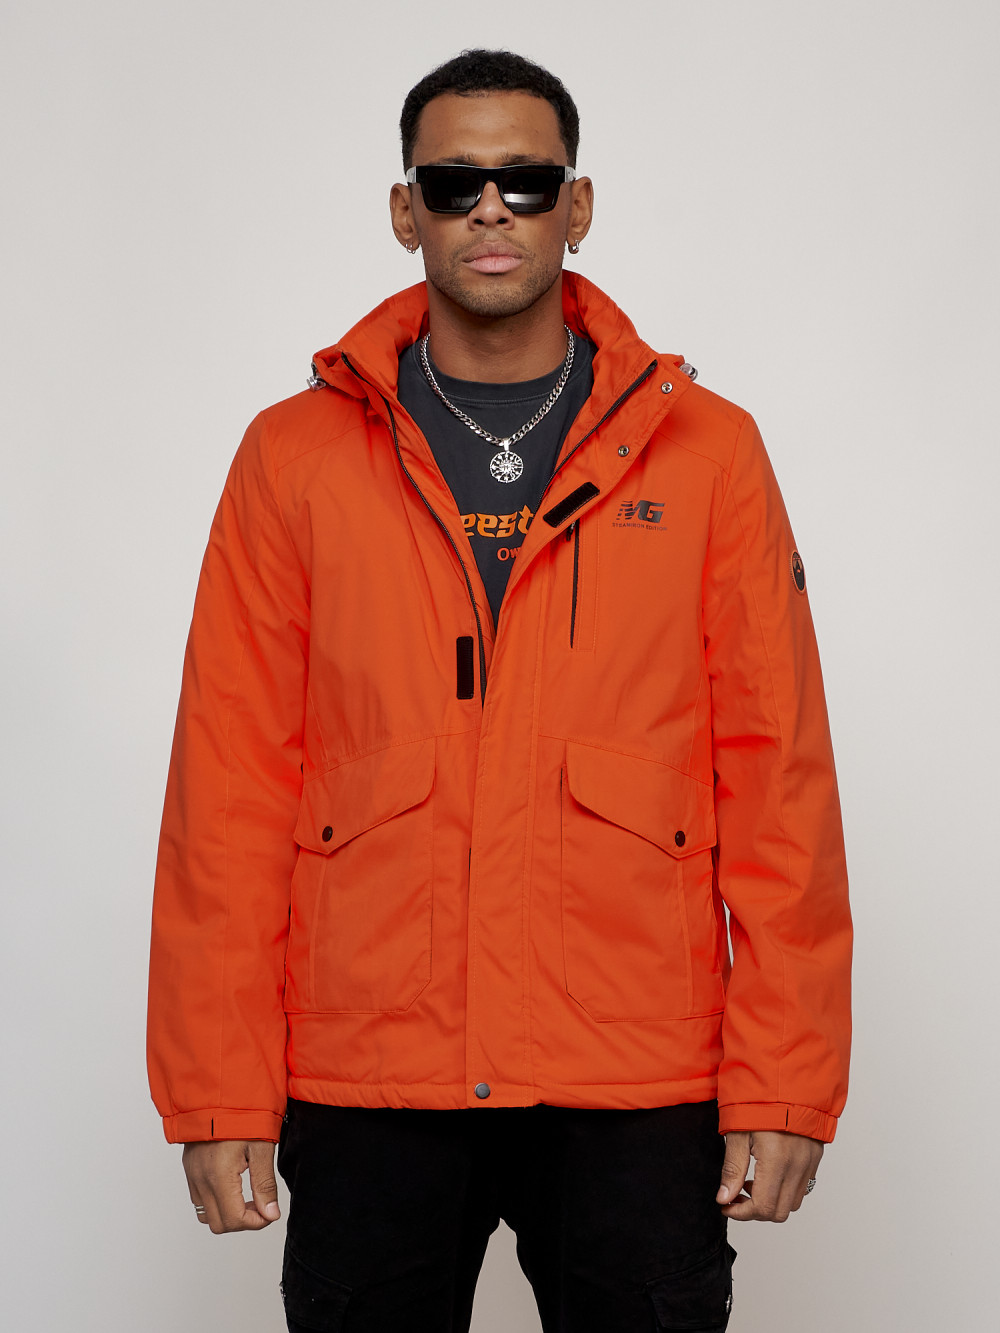 Купить оптом Куртка спортивная мужская весенняя с капюшоном оранжевого цвета 88025O в Казани